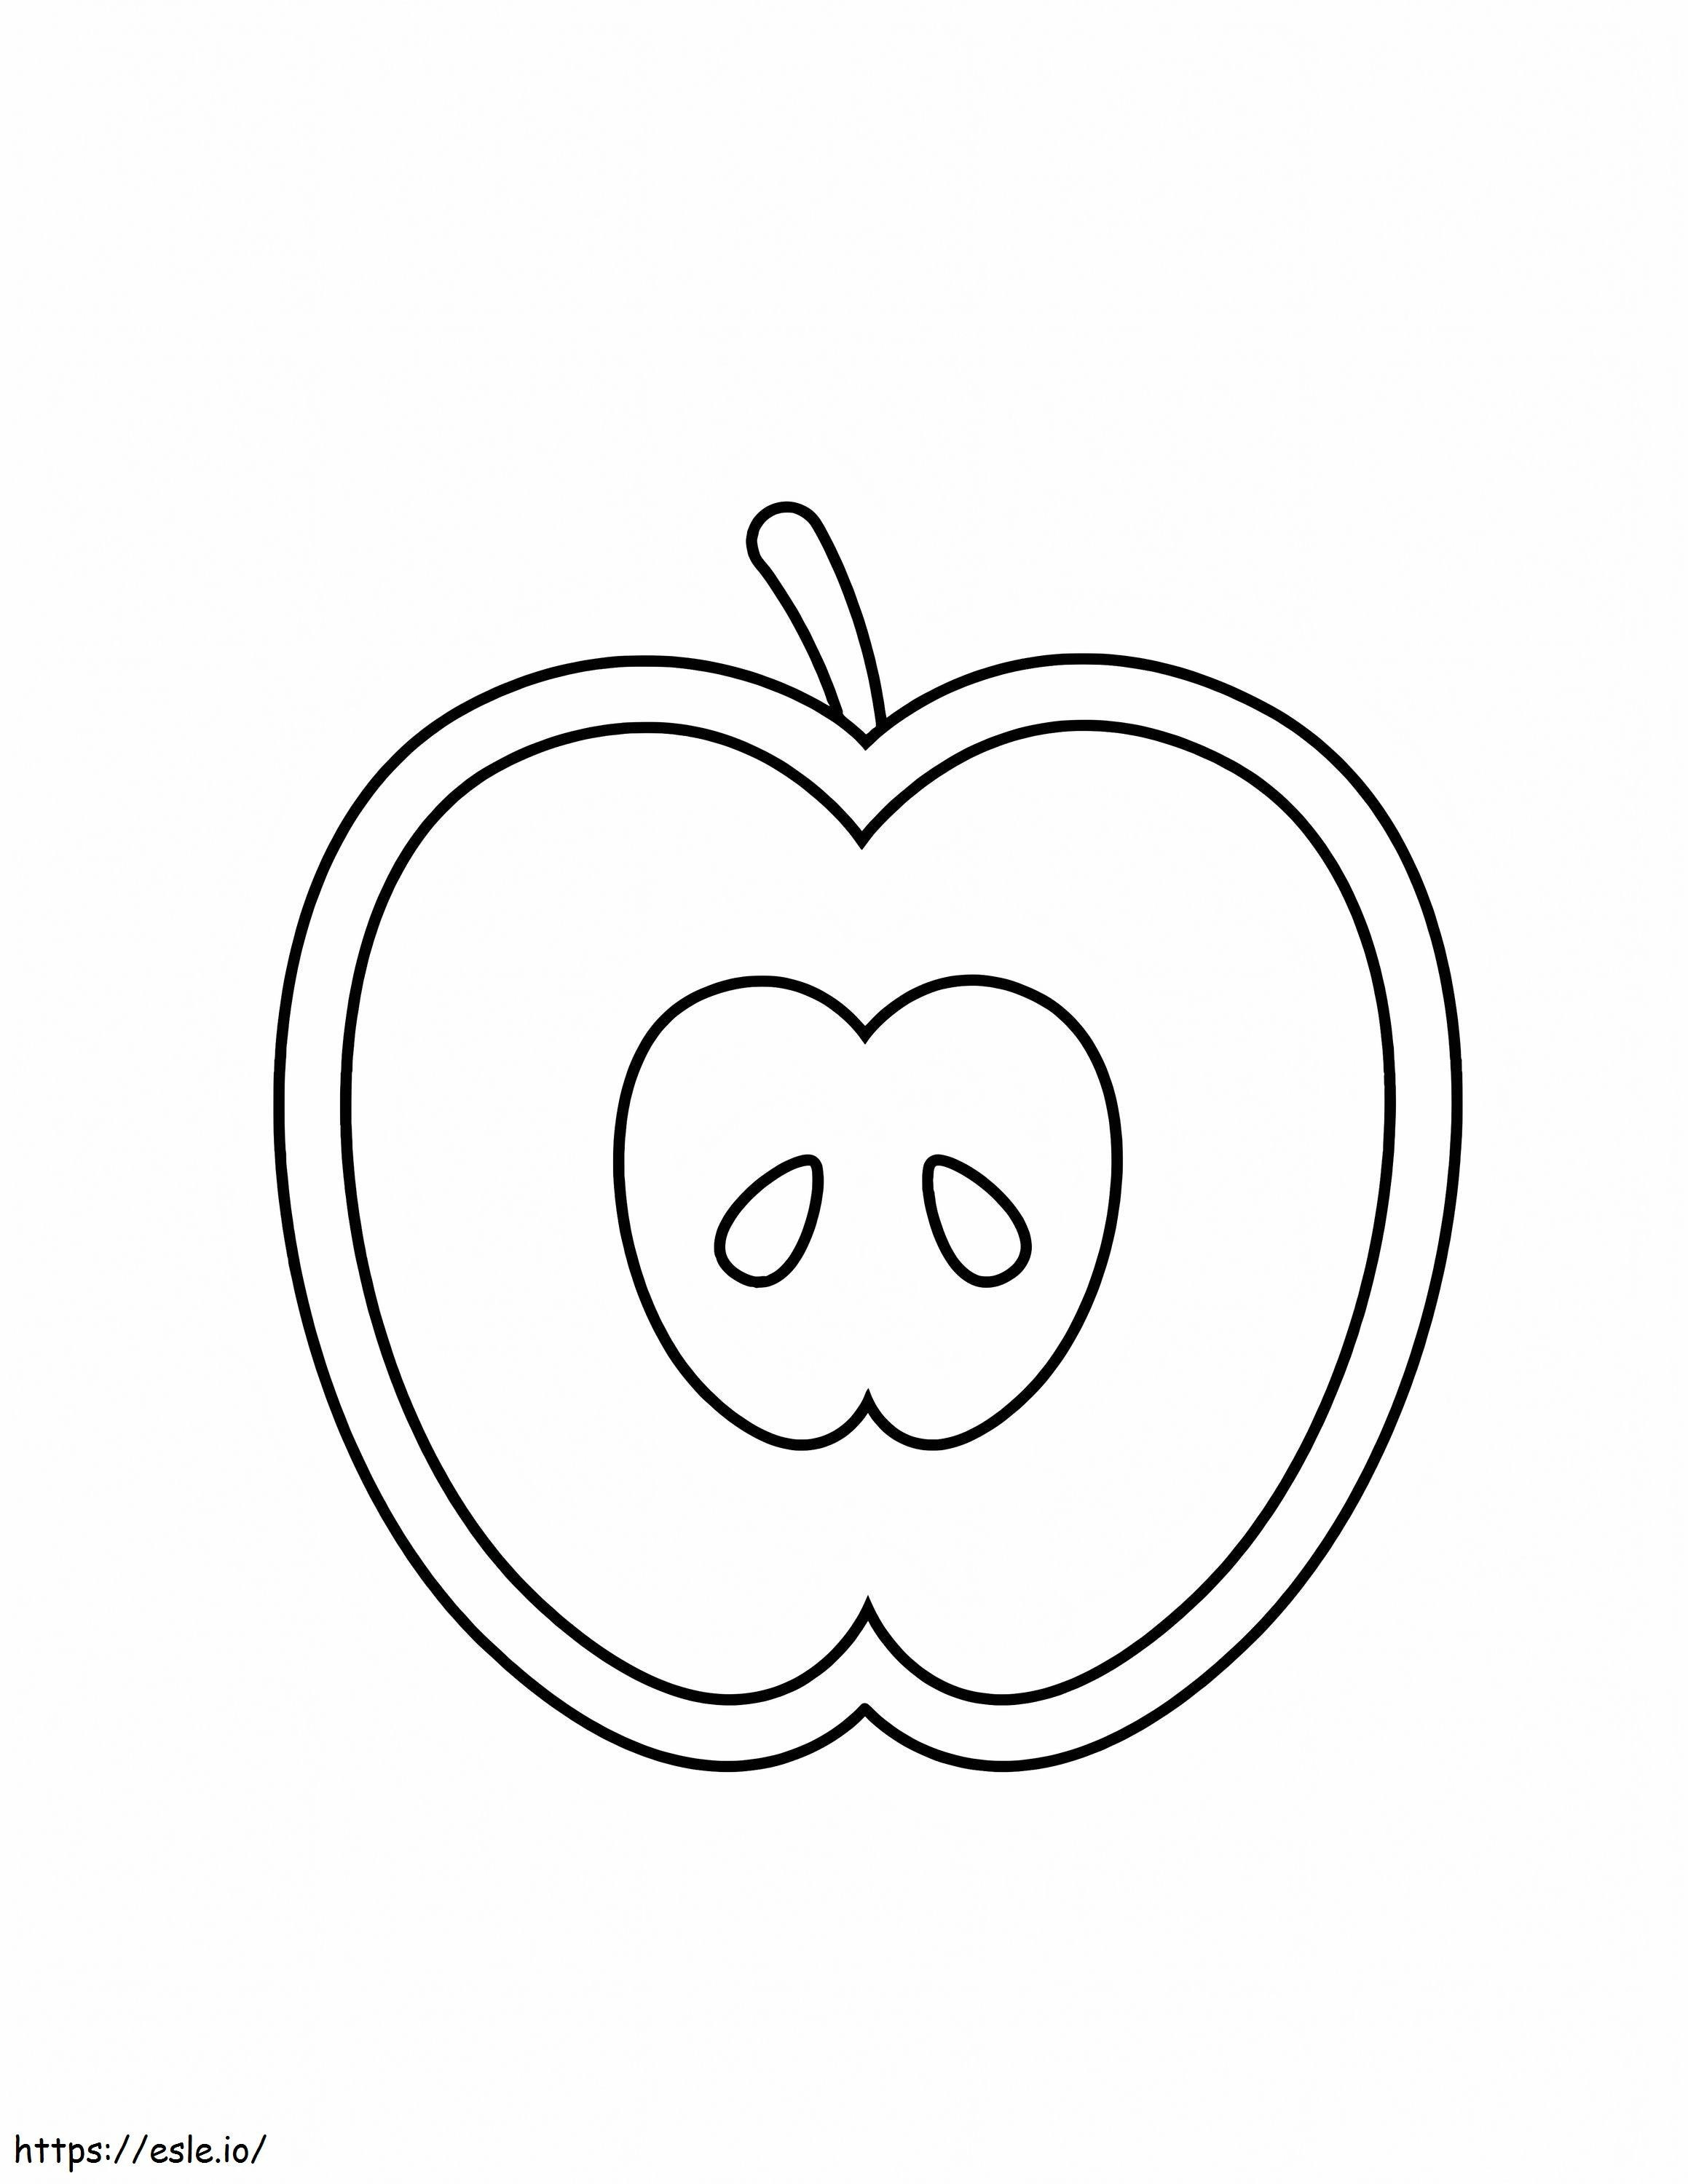 Coloriage Autocollant pomme à imprimer dessin